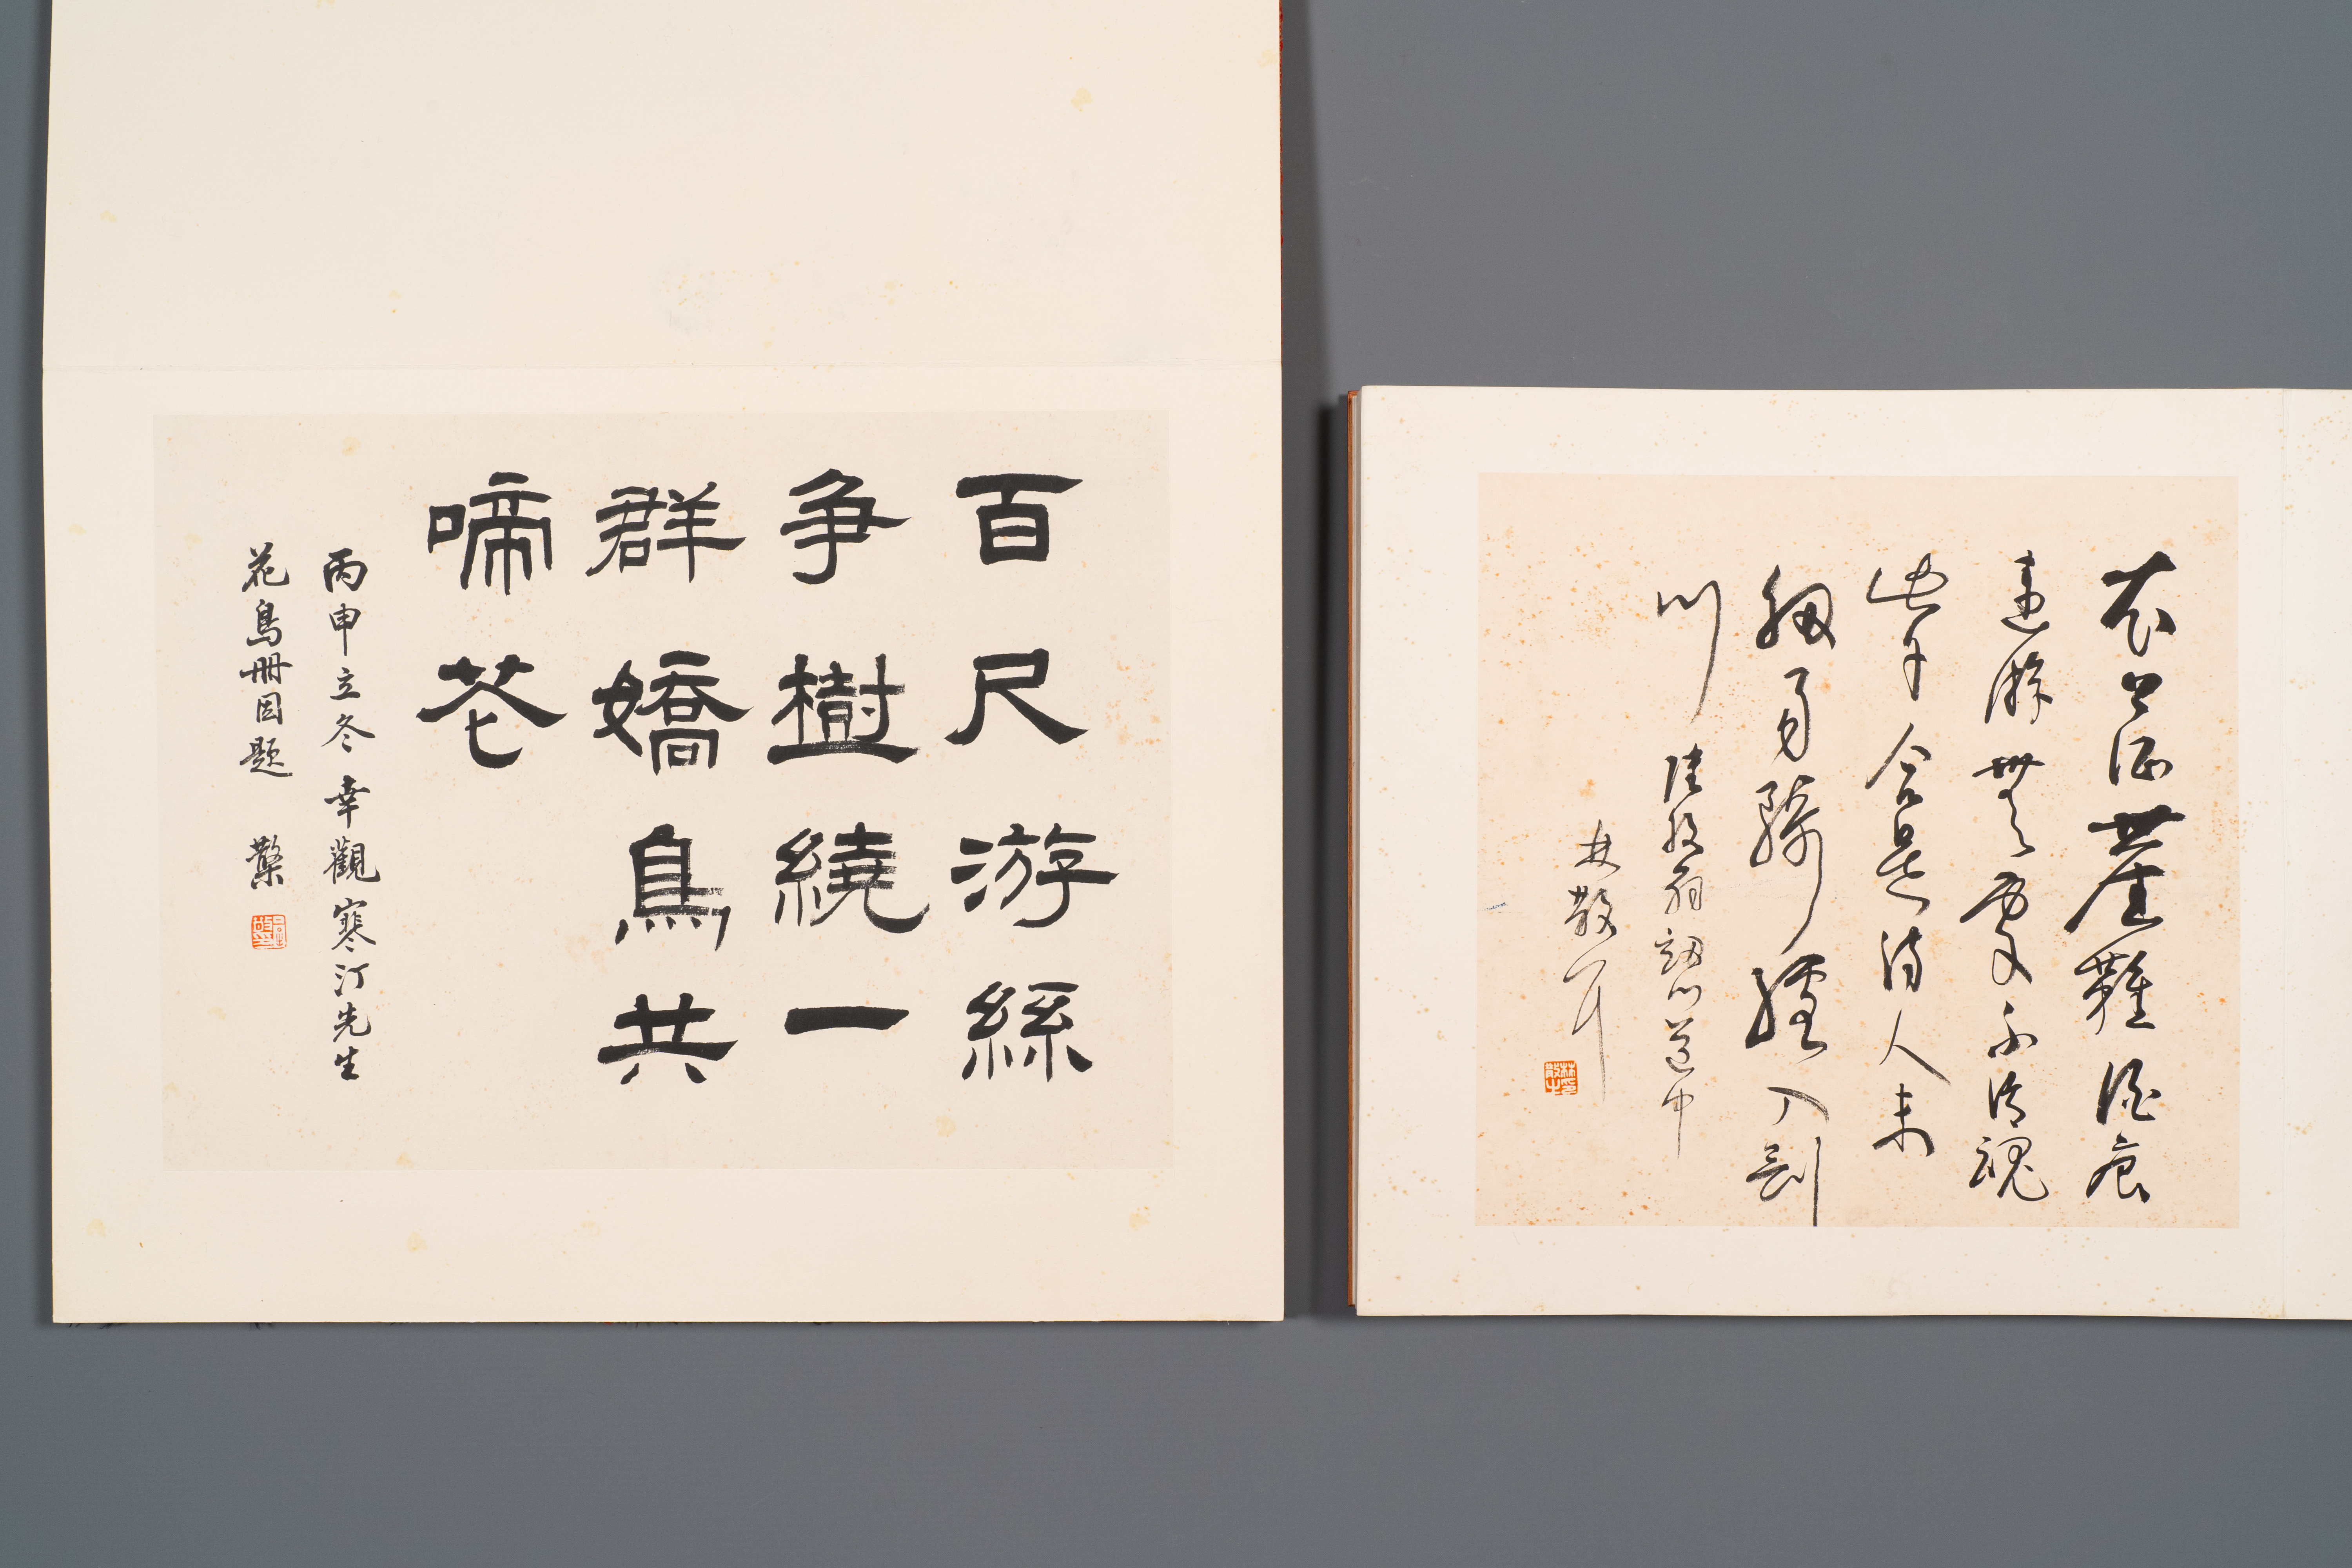 Three albums: 'Jiang Hanting æ±Ÿå¯’æ±€ (1904-1963), Lin Sanzhi æž—æ•£ä¹‹ (1898-1989) and Qi Gong å¯ - Image 3 of 23